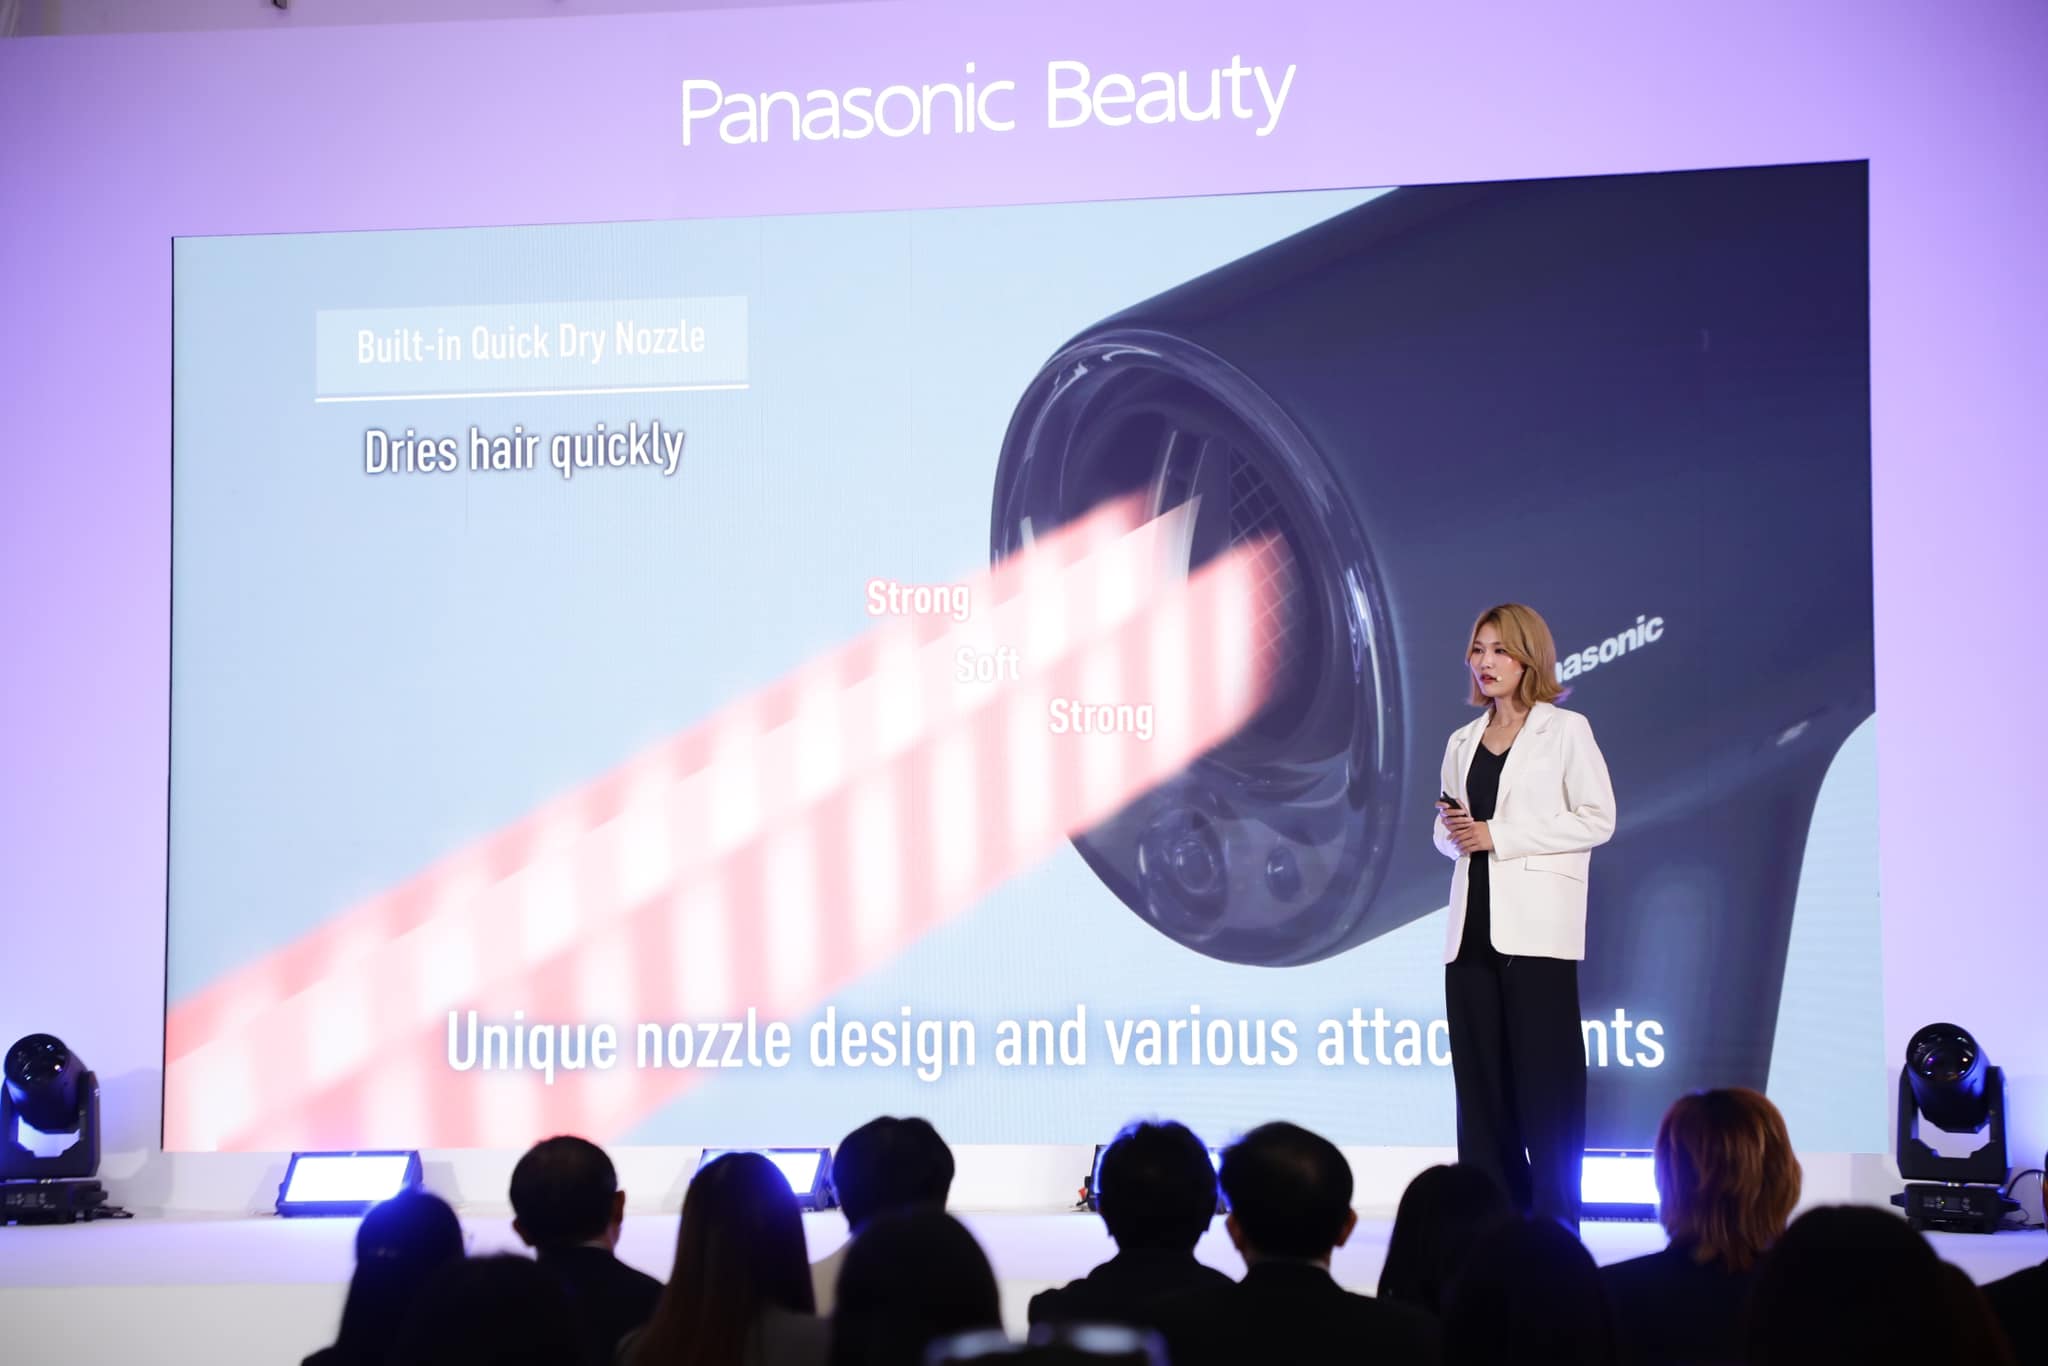 พานาโซนิค เปิดตัวผลิตภัณฑ์ใหม่ “Panasonic nanocare EH-NA0J” ไดร์เป่าผมระดับท็อปซีรีส์รุ่นล่าสุด